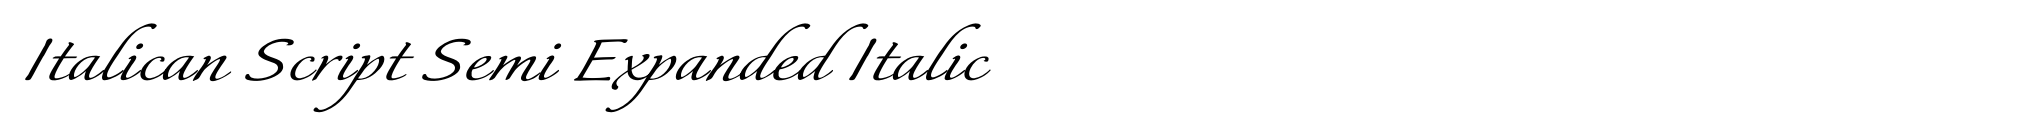 Italican Script Semi Expanded Italic image